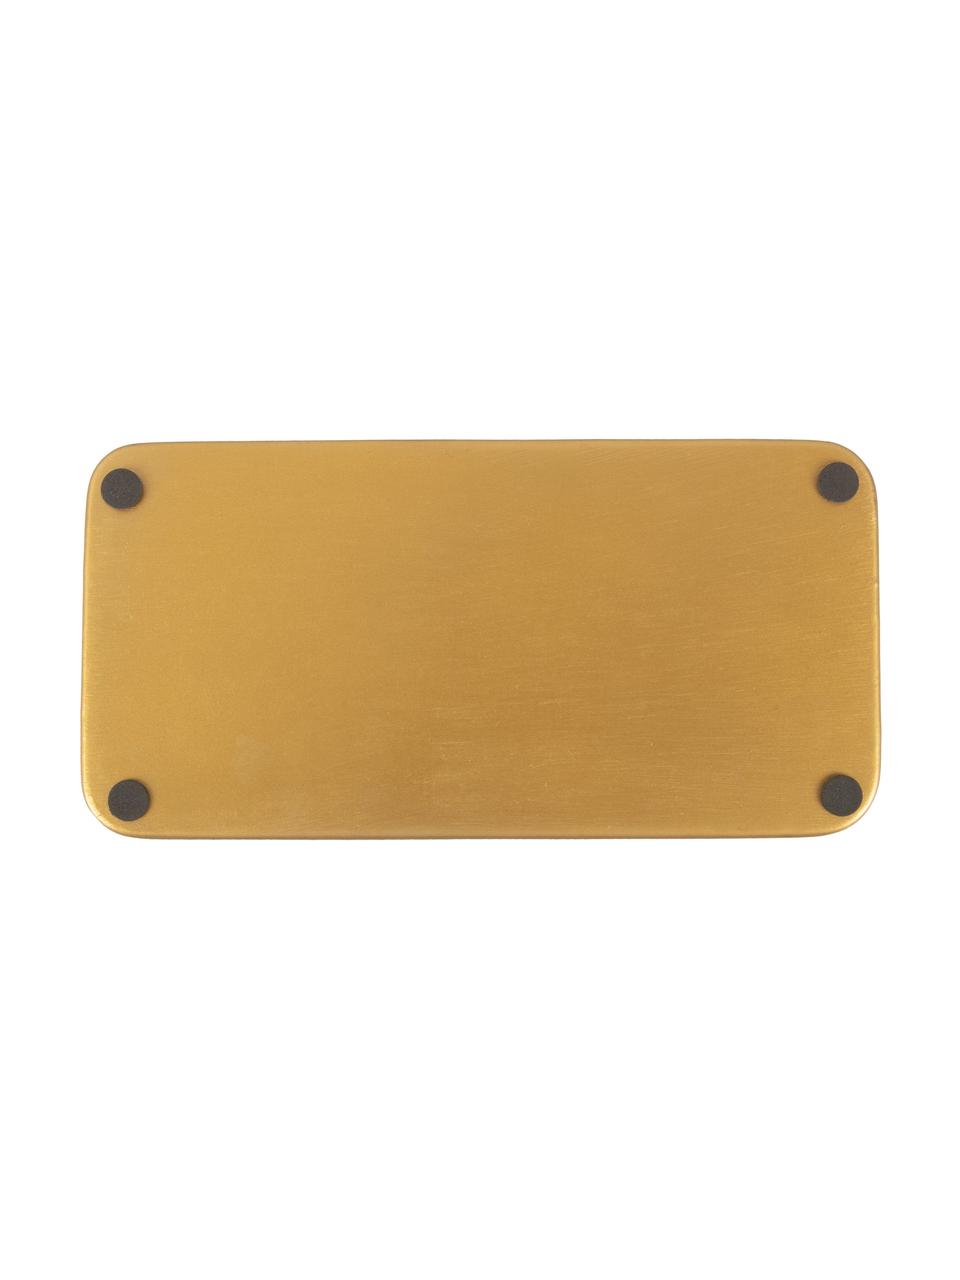 Deko-Tablett Festive mit glänzender Oberfläche in Schwarz, Metall, beschichtet, Schwarz, Goldfarben, L 25 x B 13 cm